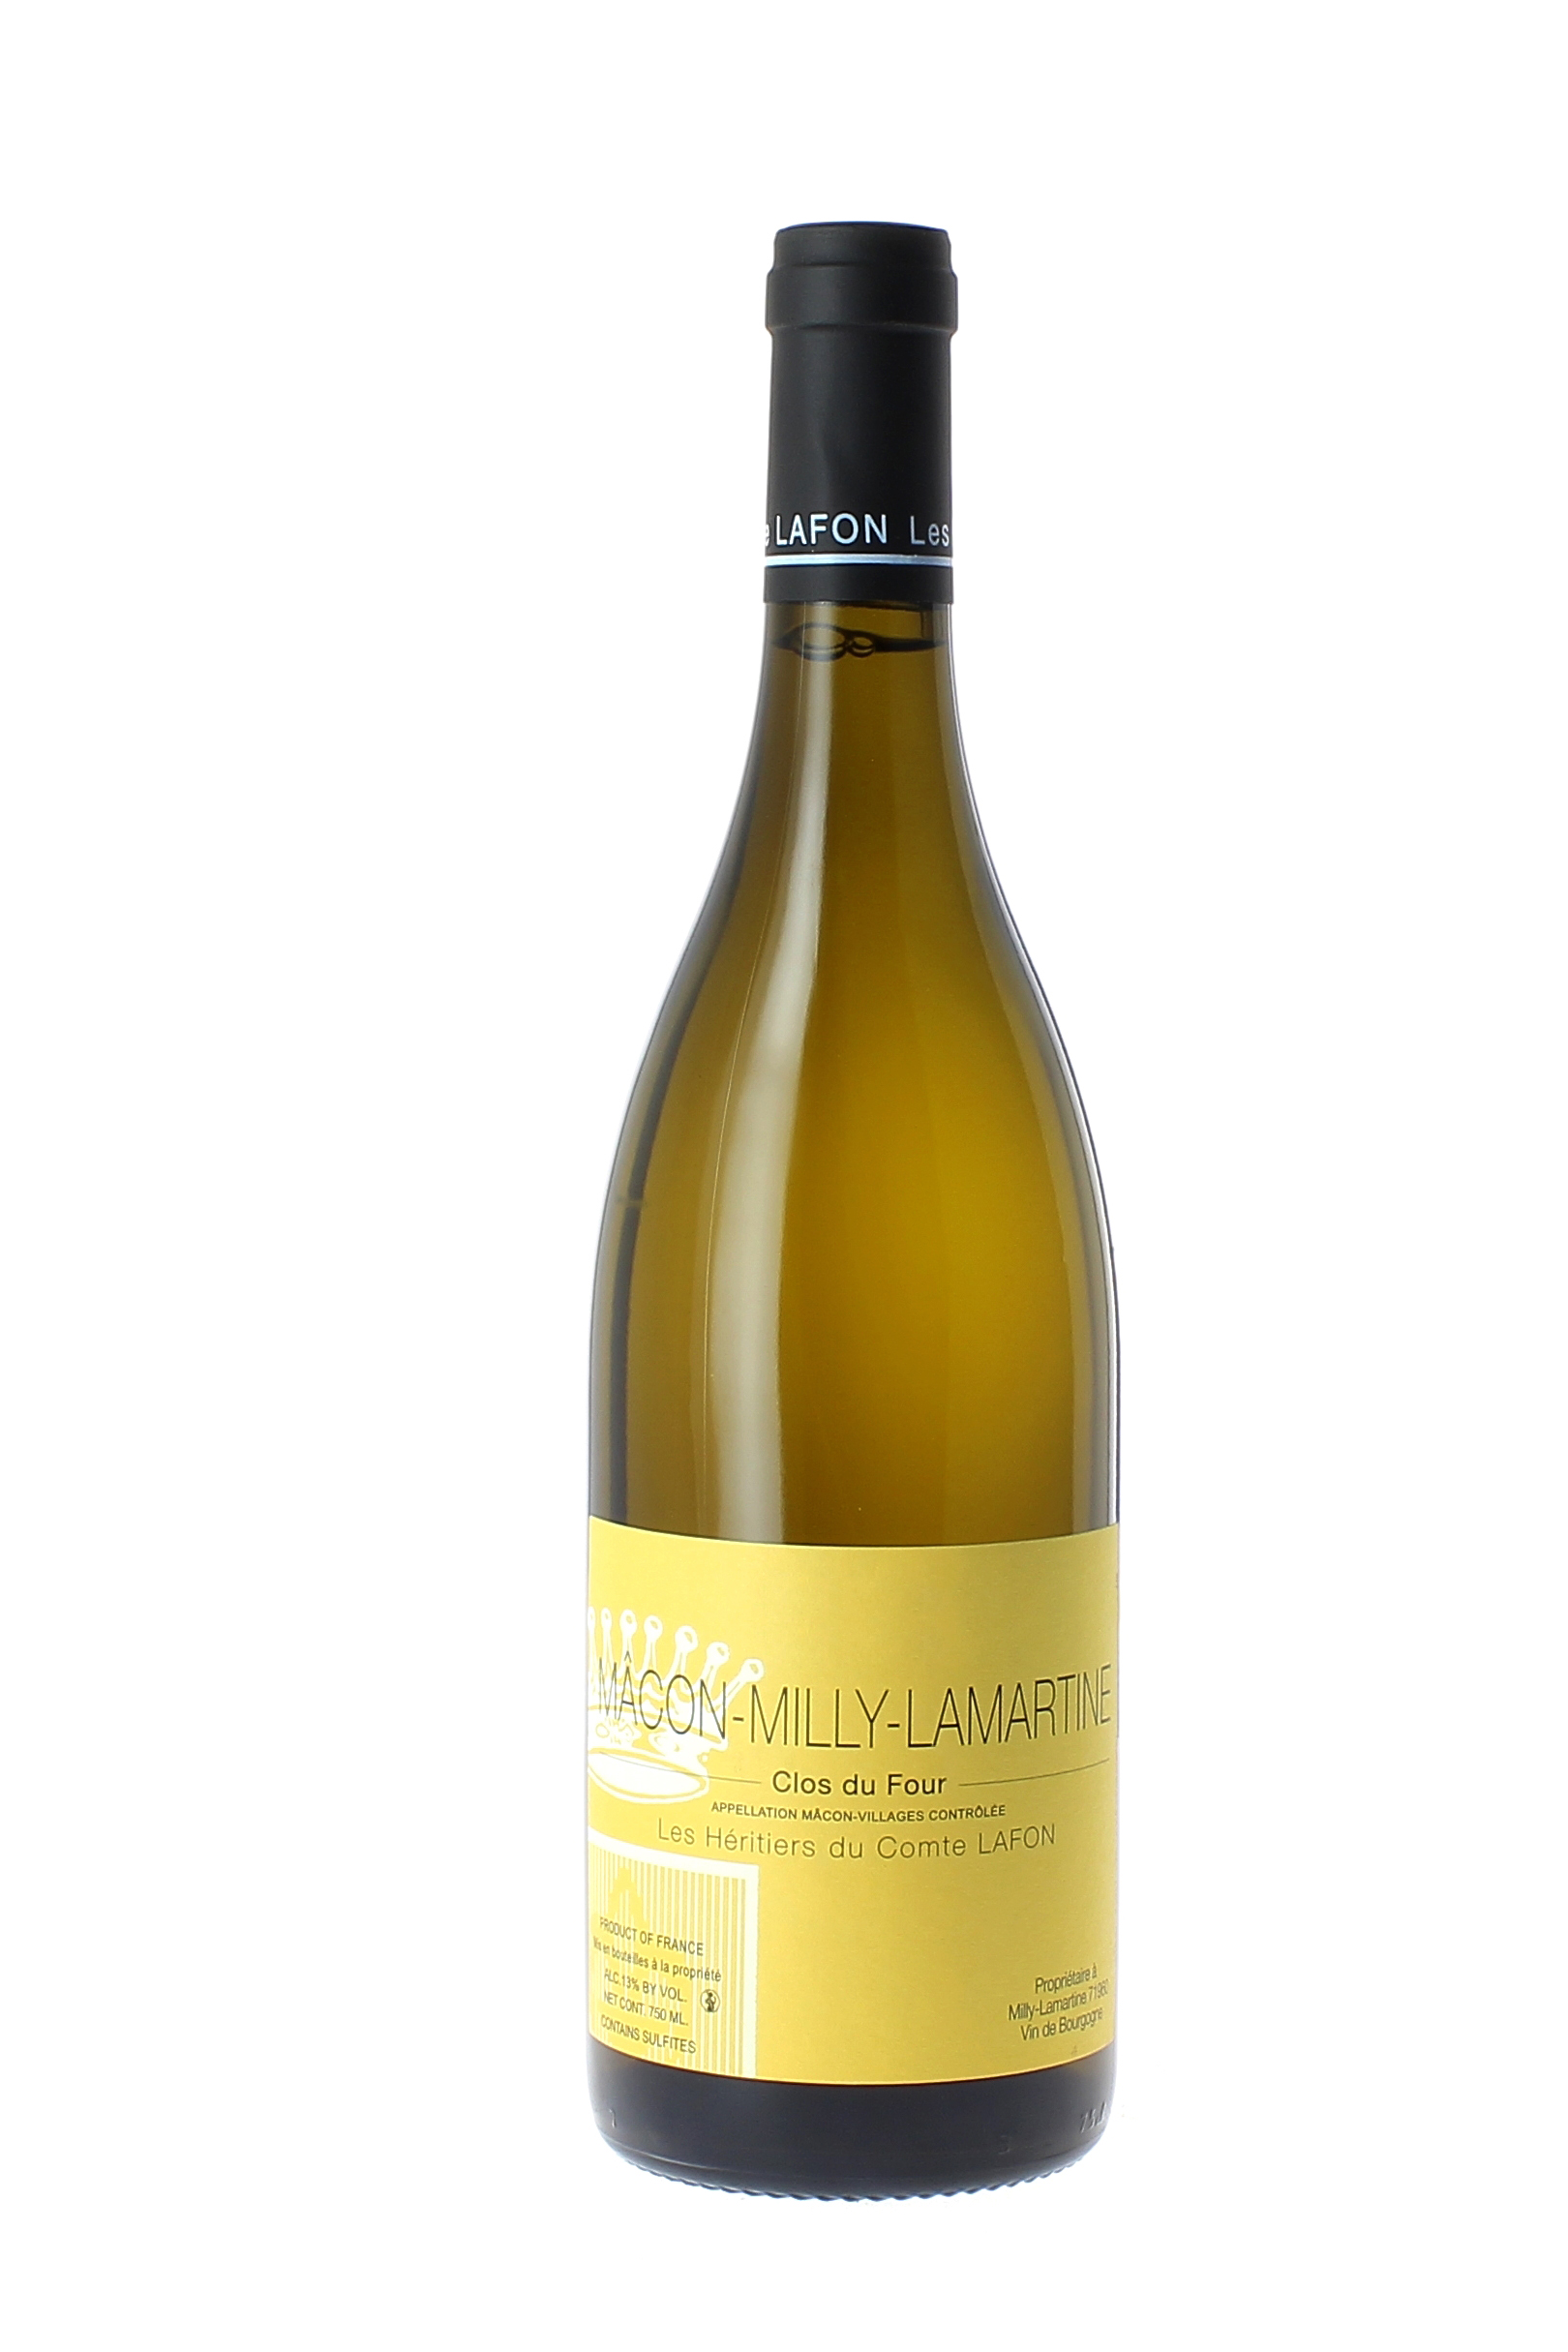 Macon milly clos du four 2016 Domaine Comtes LAFON Hritiers, Bourgogne blanc